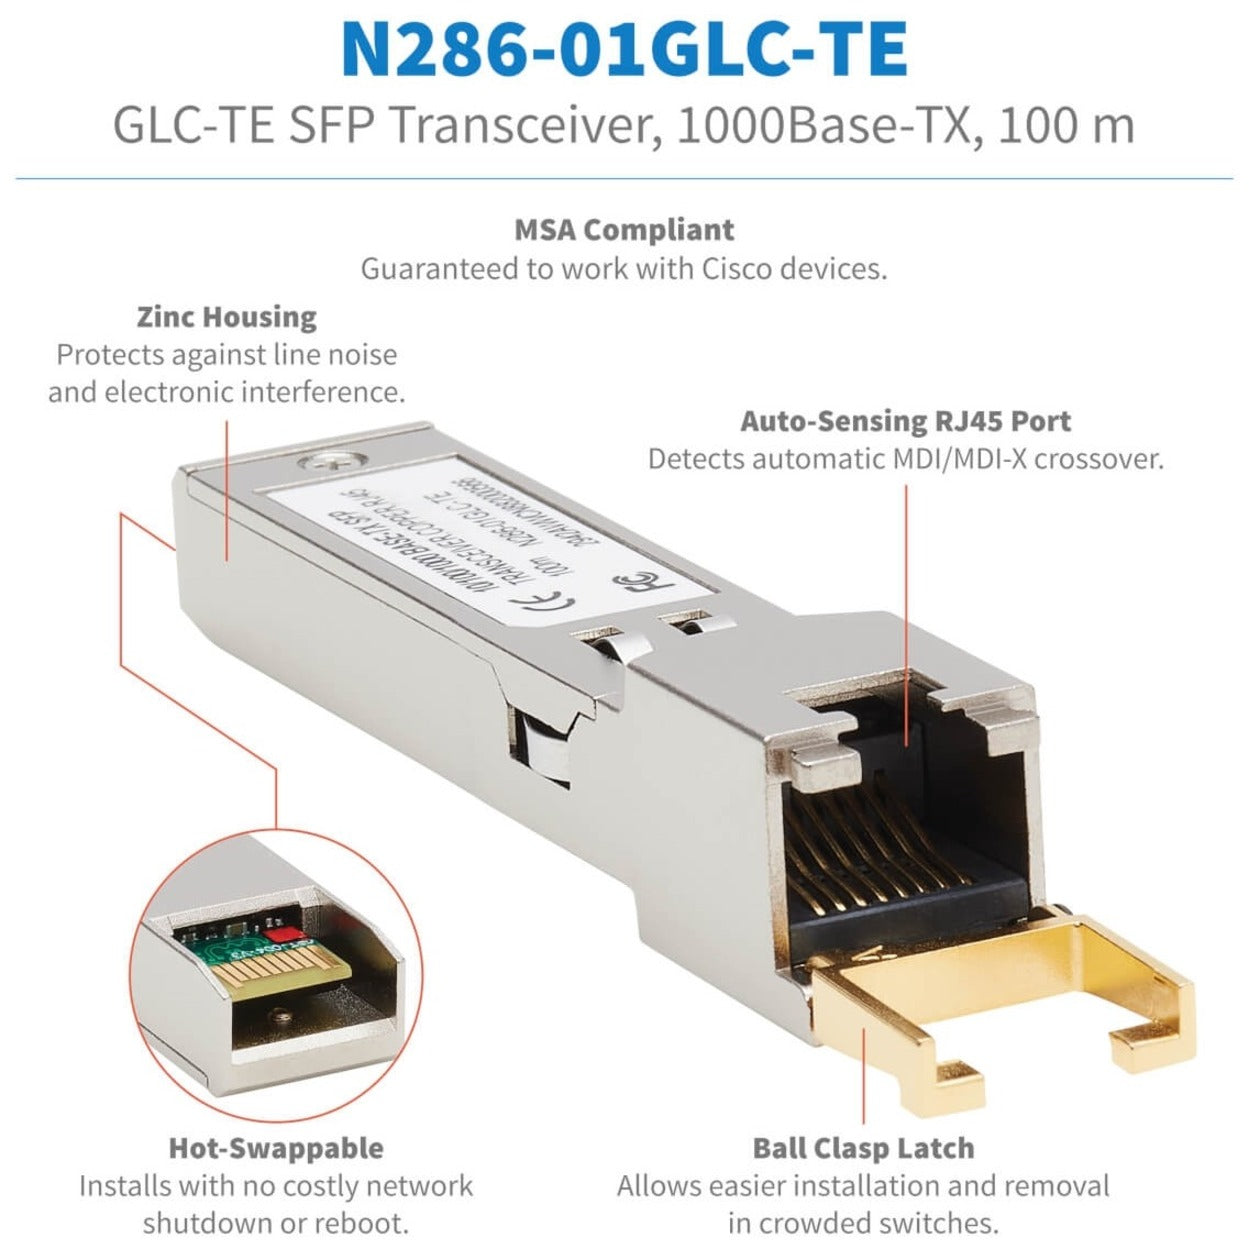 تريب لايت N286-01GLC-TE موديل سيسكو SFP (mini-GBIC)، 1000Base-TX، جيجابت إيثرنت، أسلاك ملتوية، قابل للتبديل بالسخاء